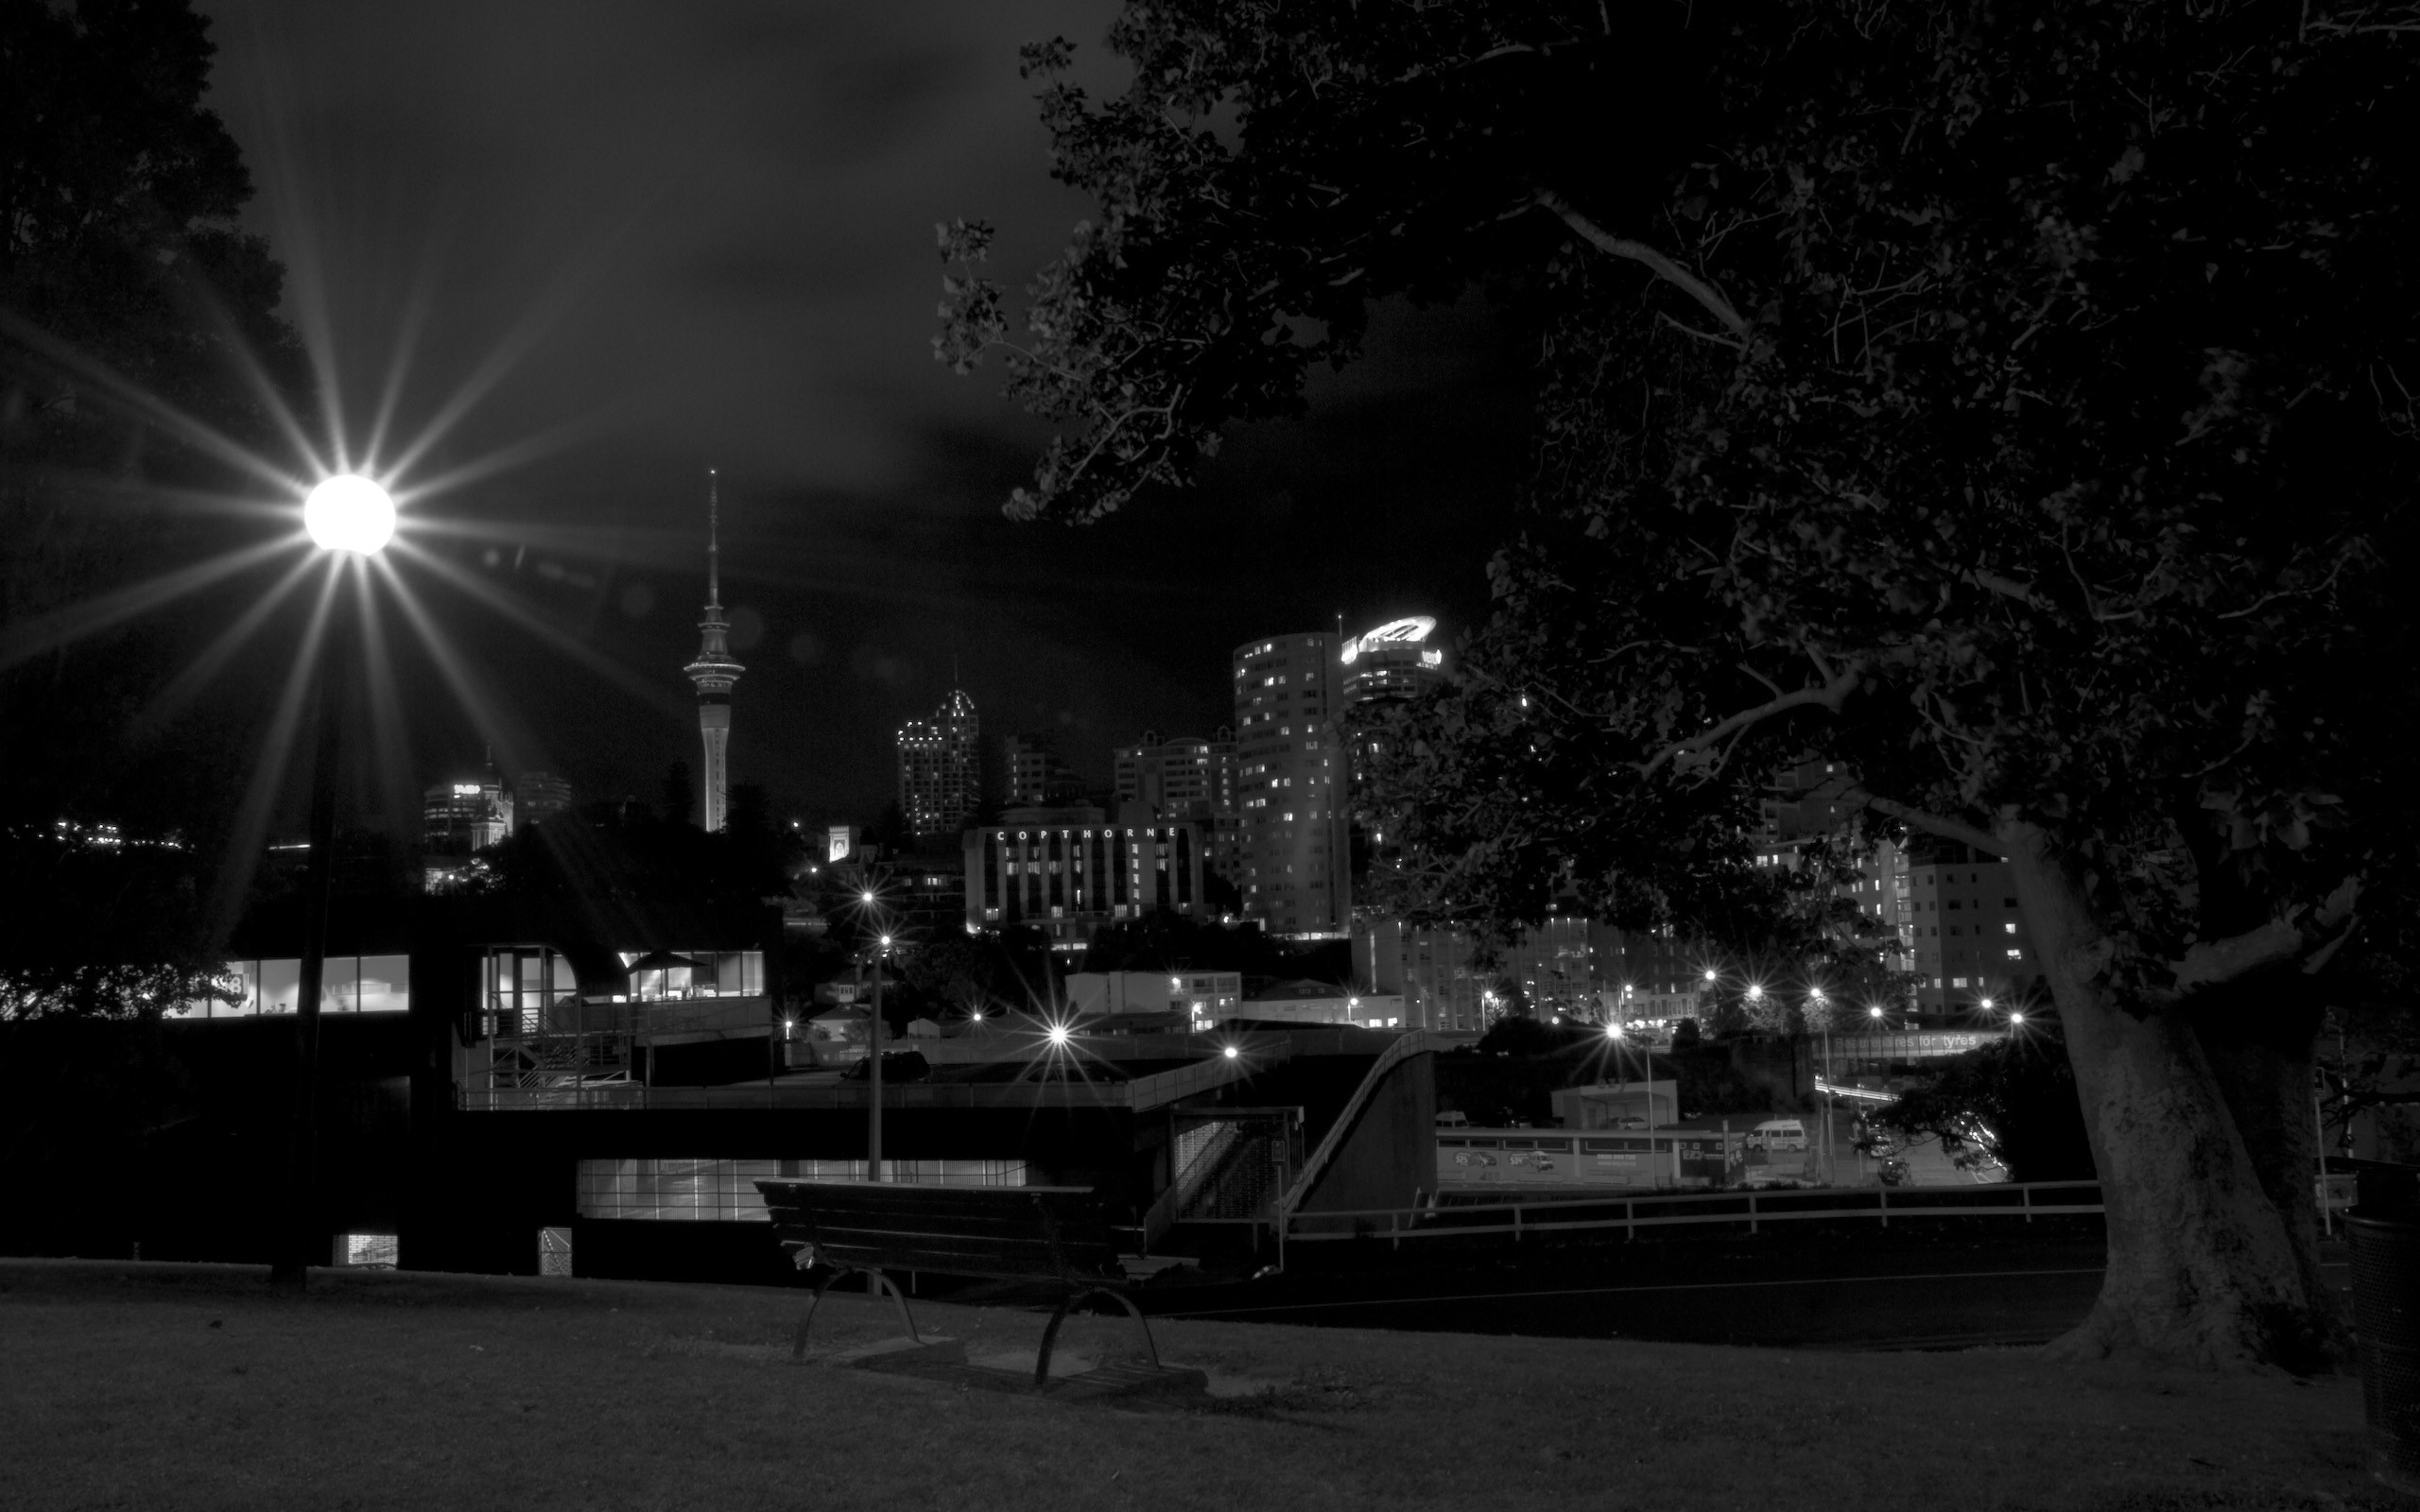 Auckland Skyline bei Nacht